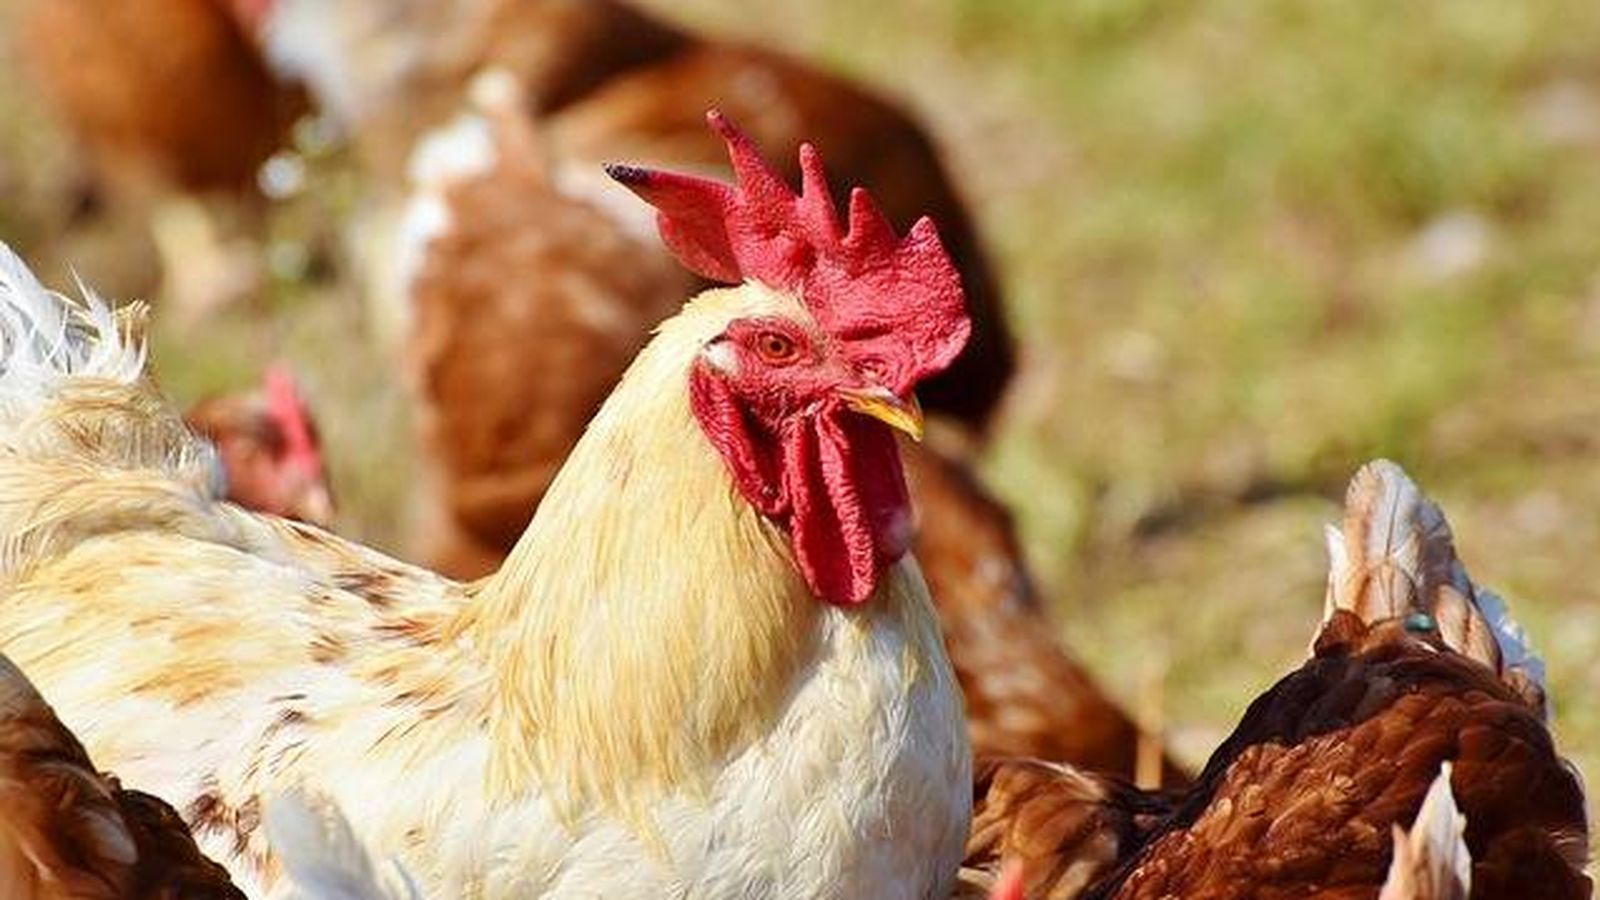 Foto: Destapan peleas de gallos clandestinas en Badajoz (Pixabay)